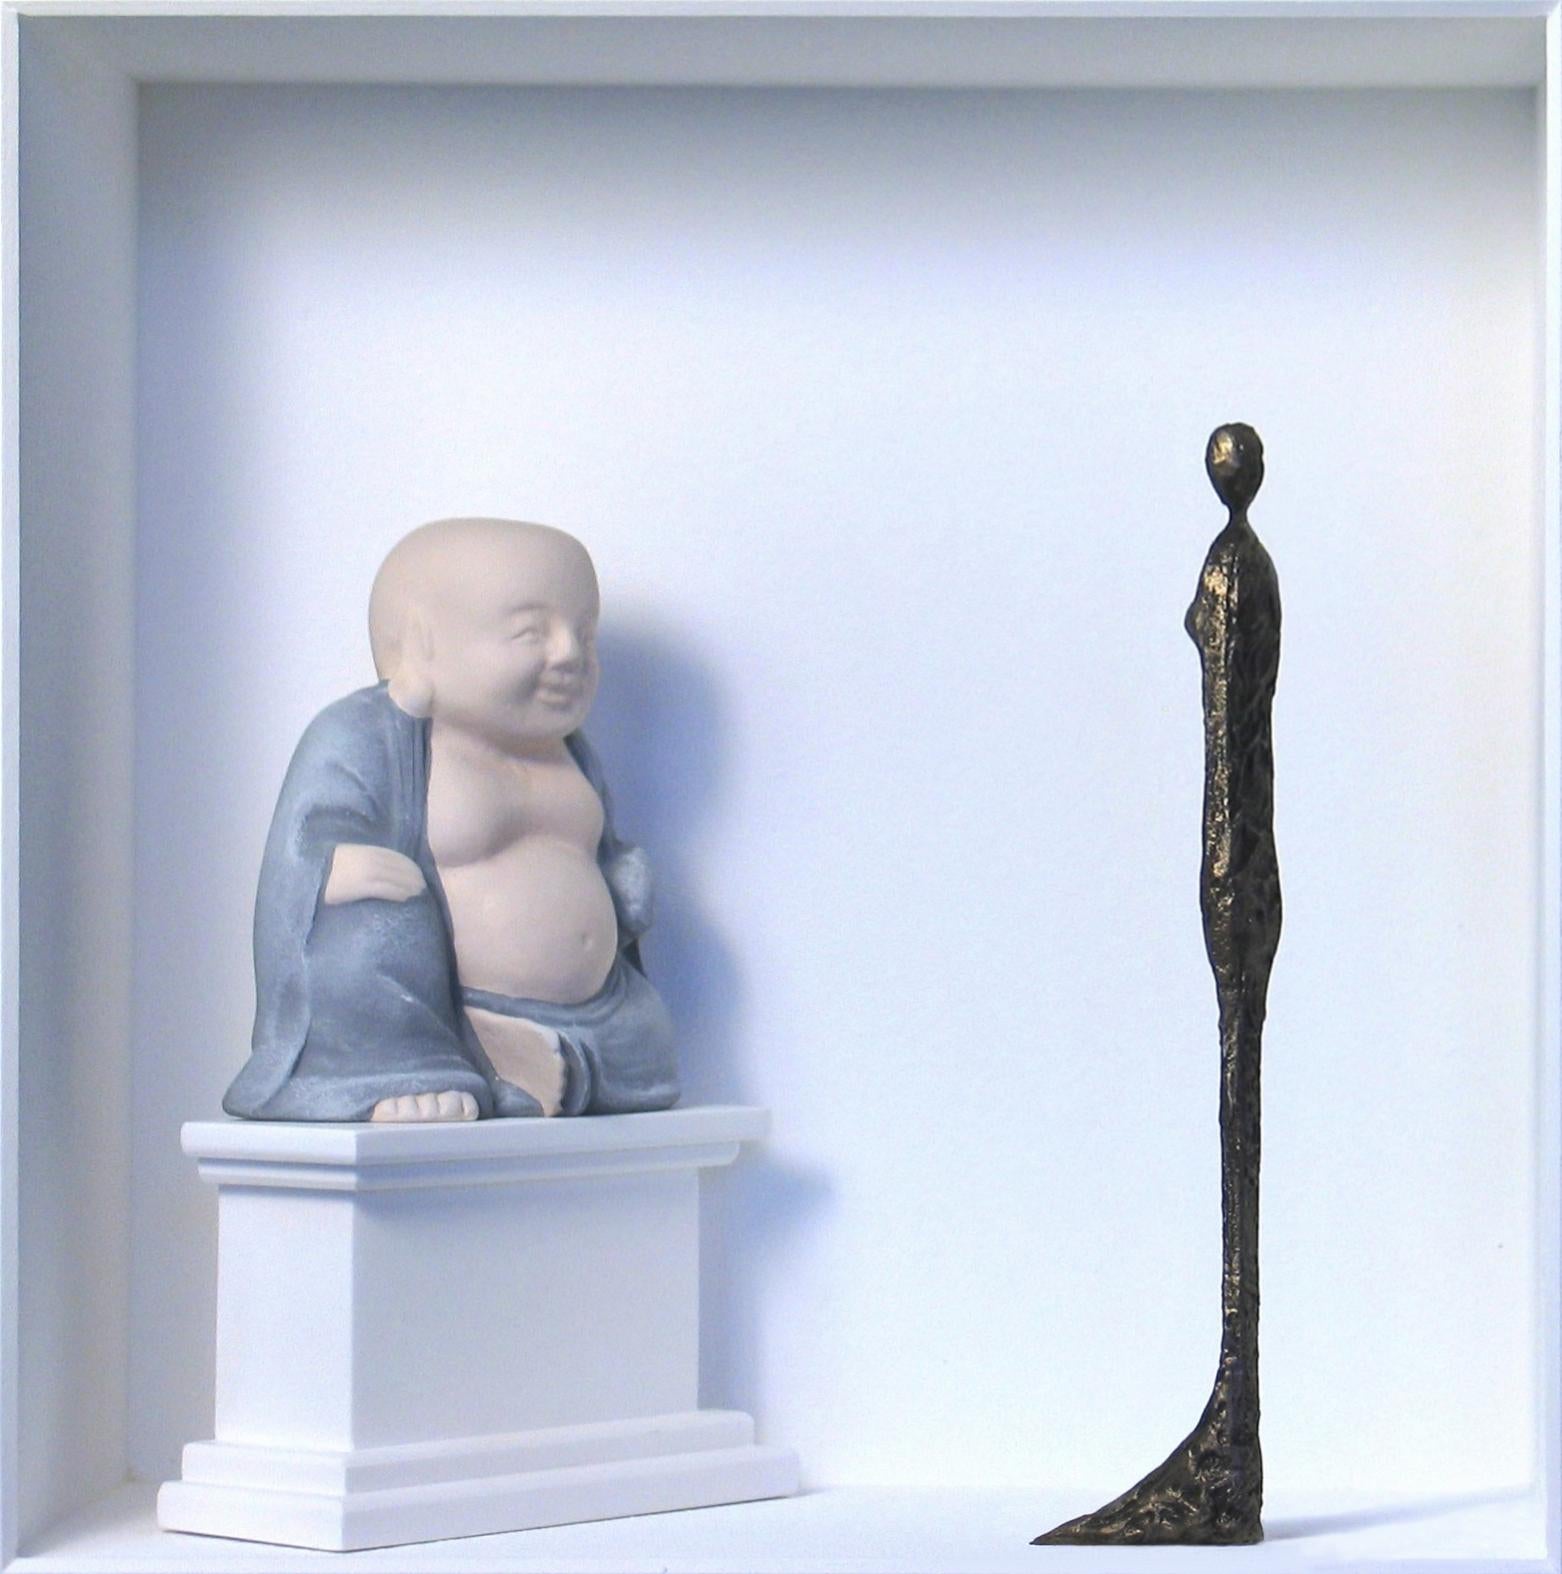 Giacometti trifft Buddha – zeitgenössische Kunstwerke als Hommage an den Bildhauer Giacometti